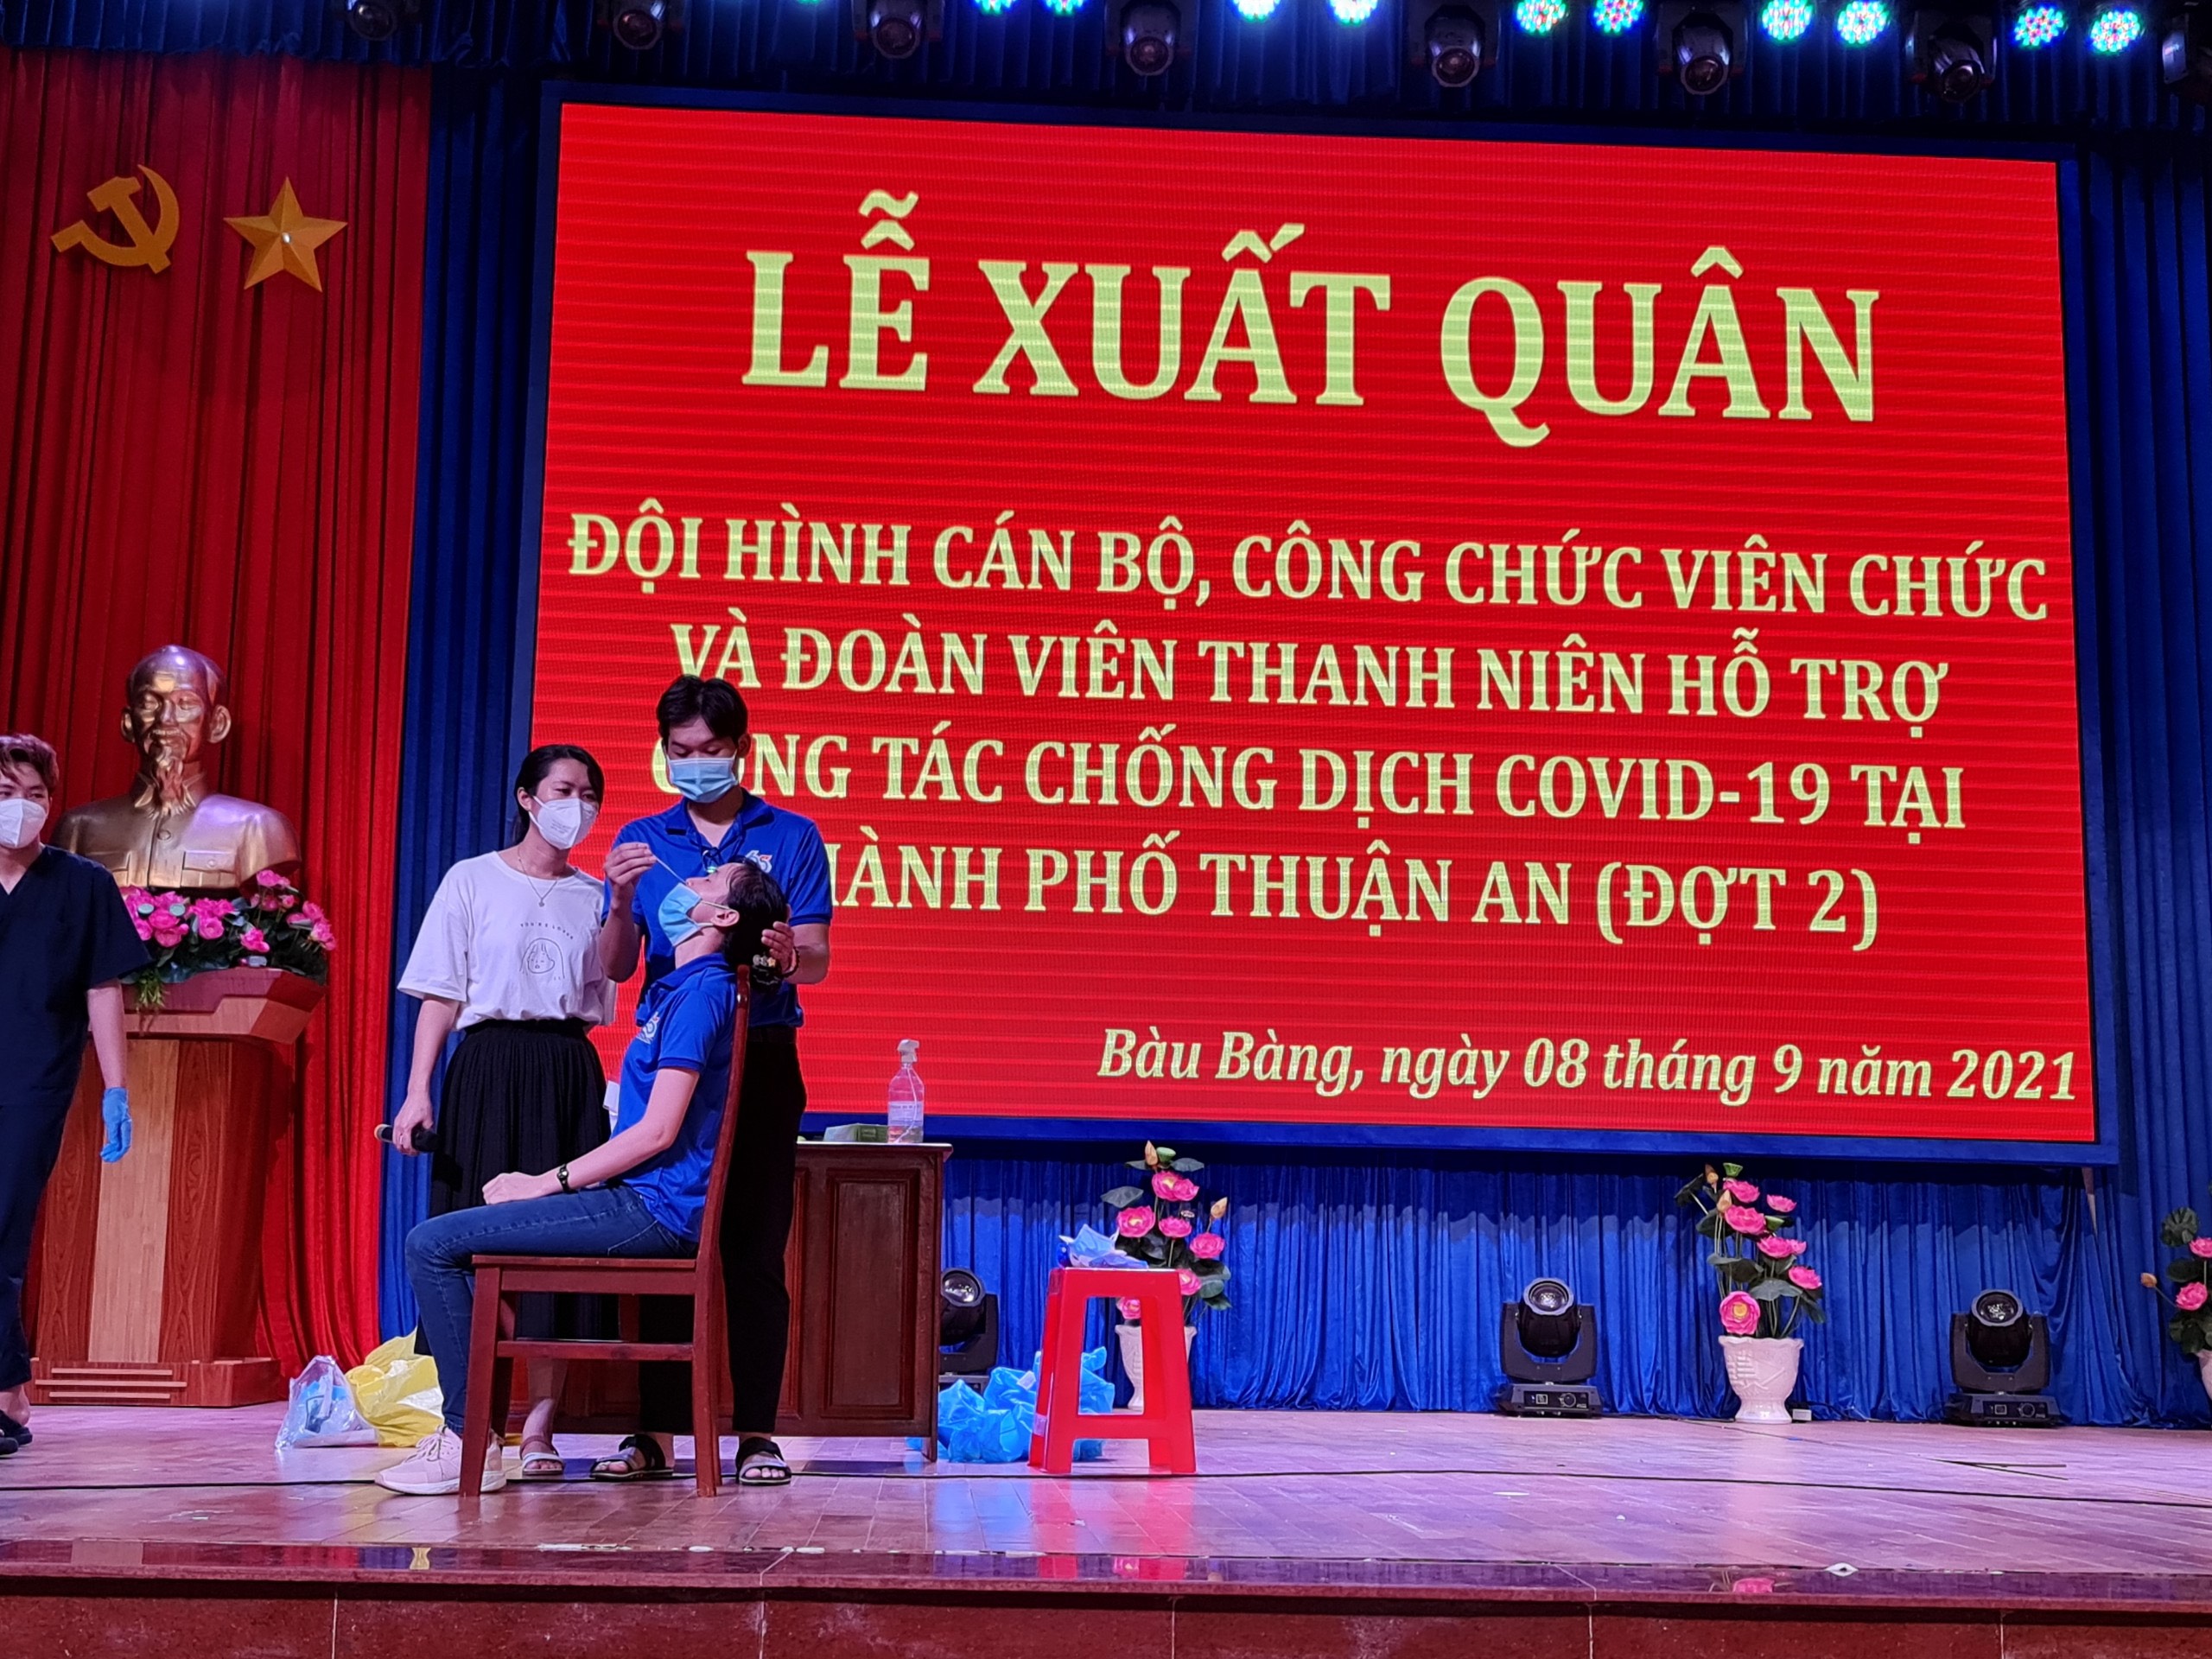 Bàu Bàng tổ chức Lễ xuất quân đội hình cán bộ, công chức, viên chức và đoàn viên thanh niên tham chống dịch Covid-19 tại thành phố Thuận An (đợt 2)